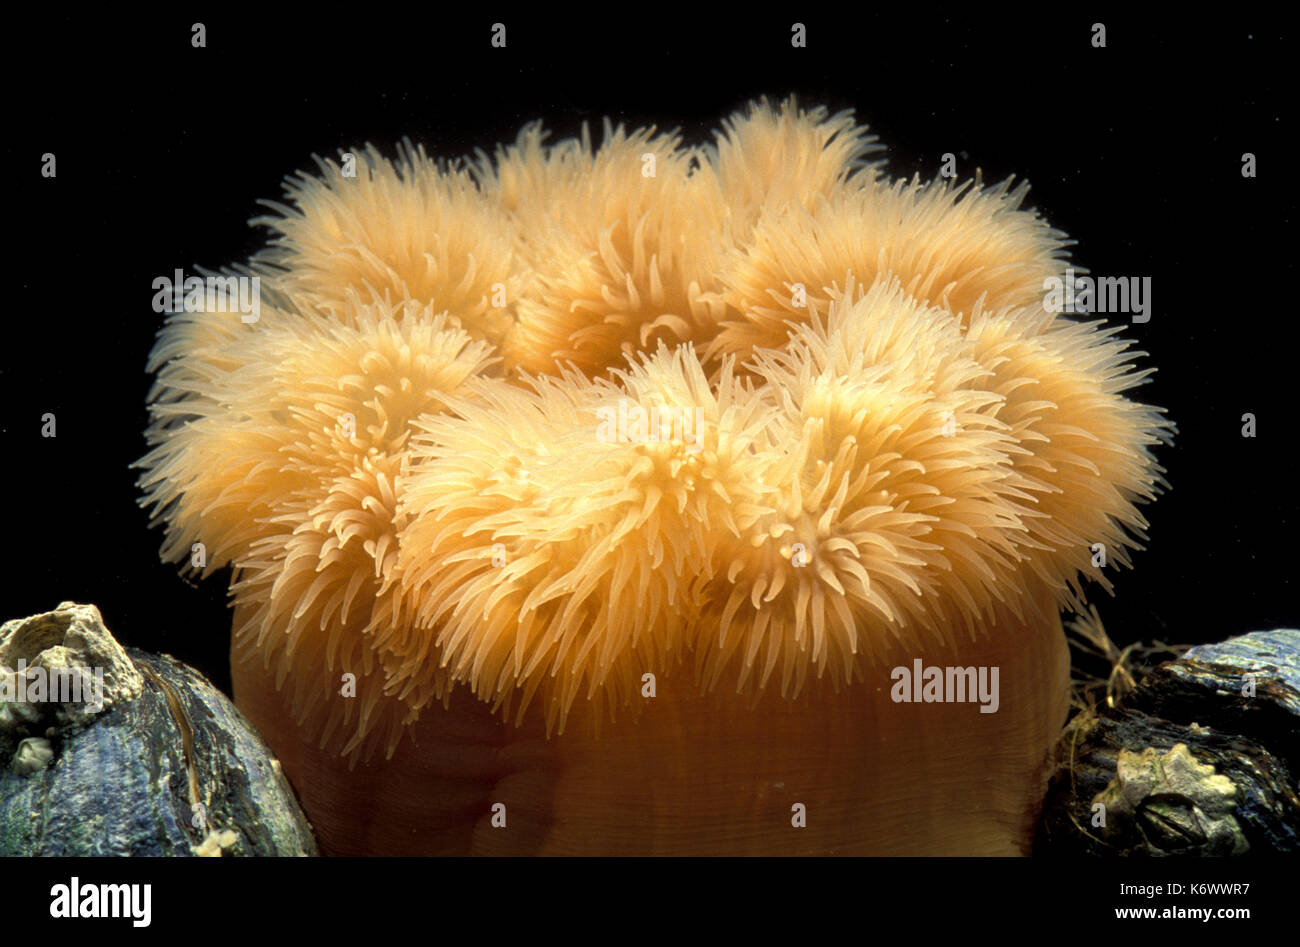 Plumrose anemone, metridium senile, di colore arancione con tentacoli Foto Stock